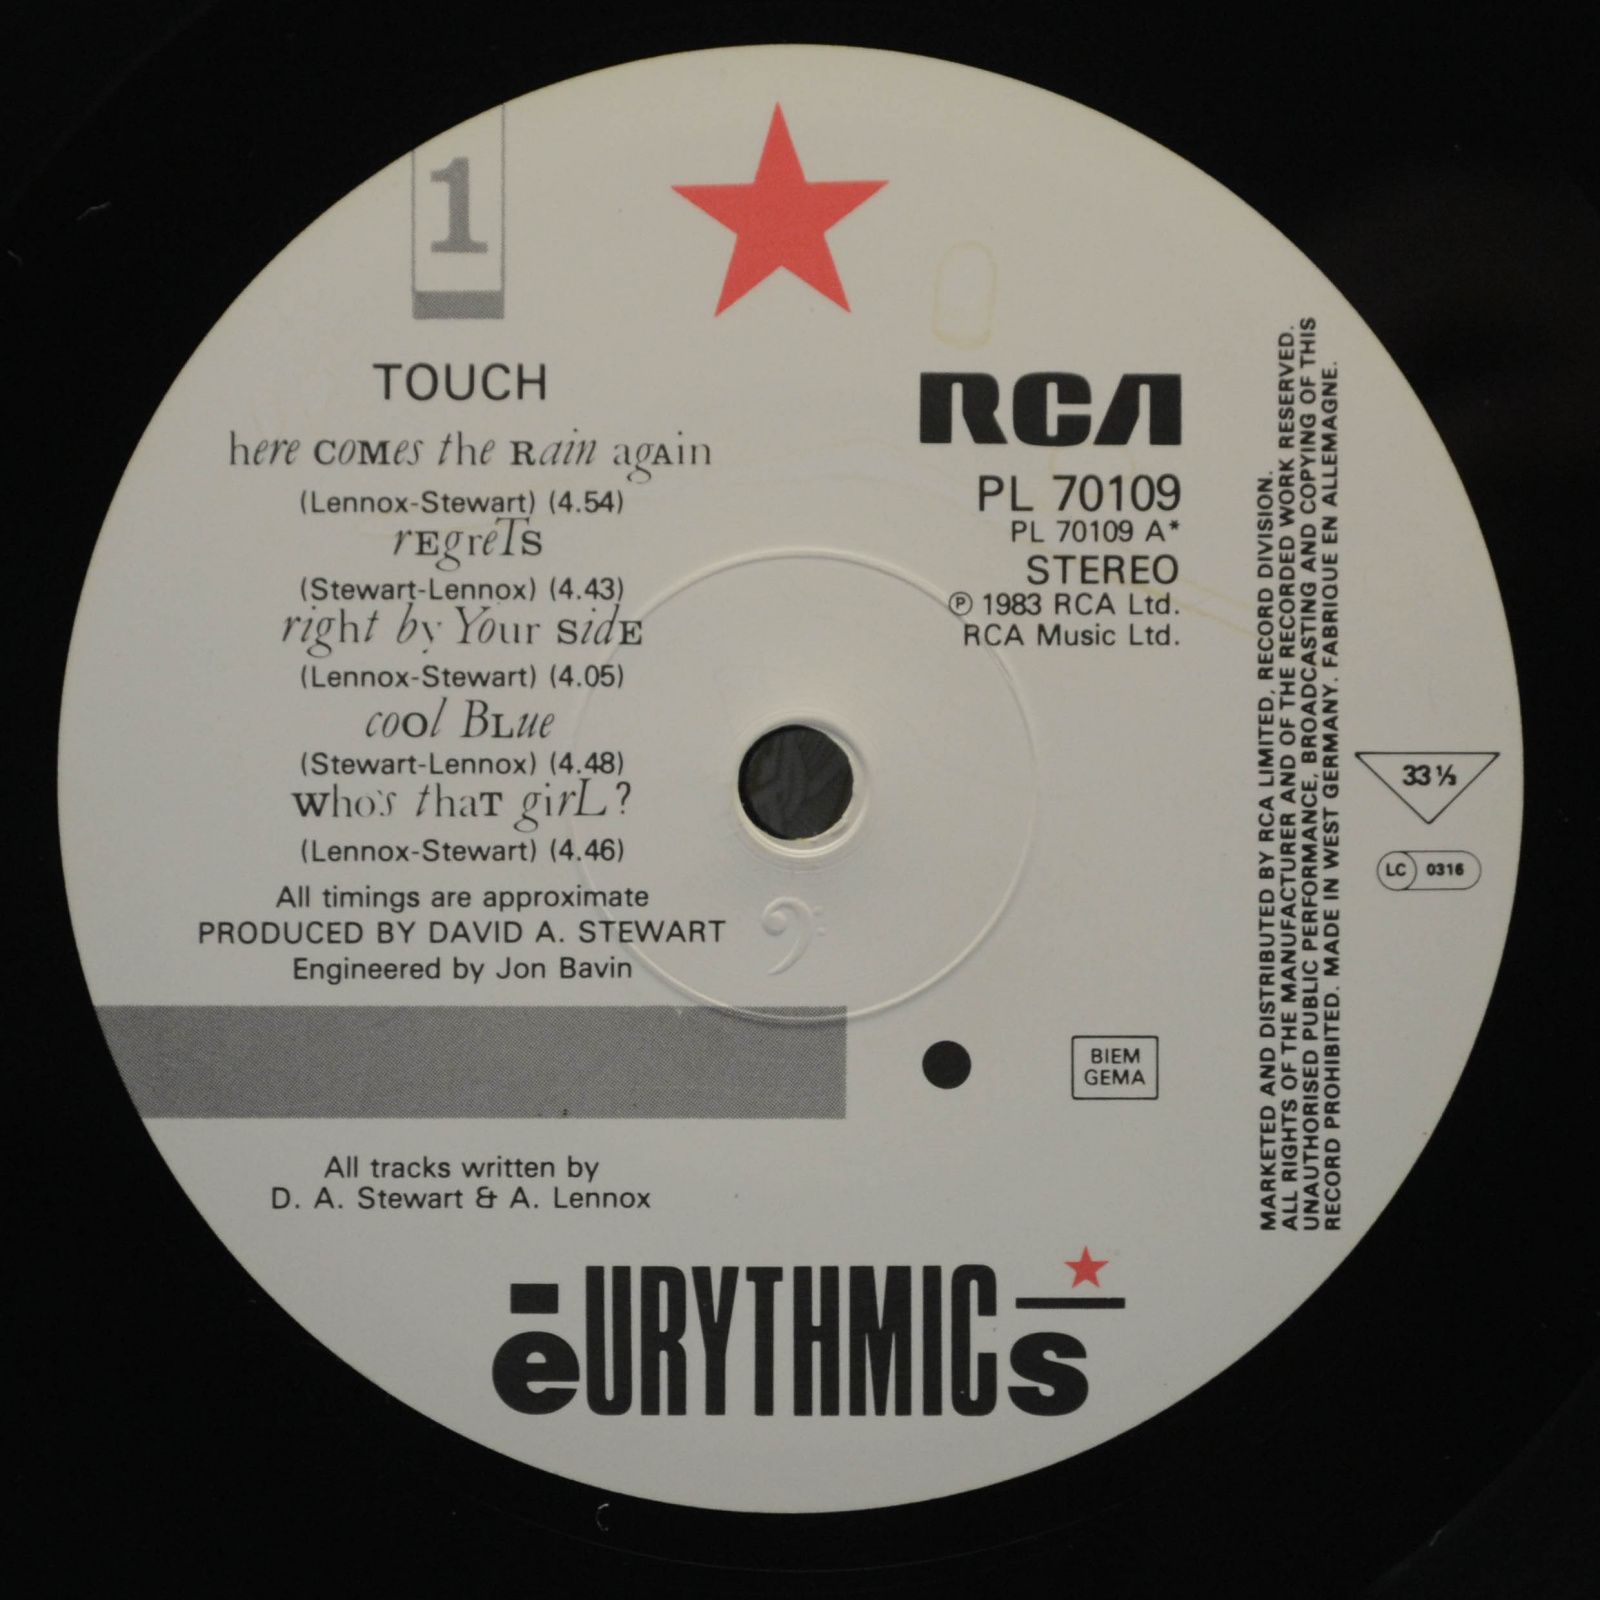 Eurythmics — Touch, 1983